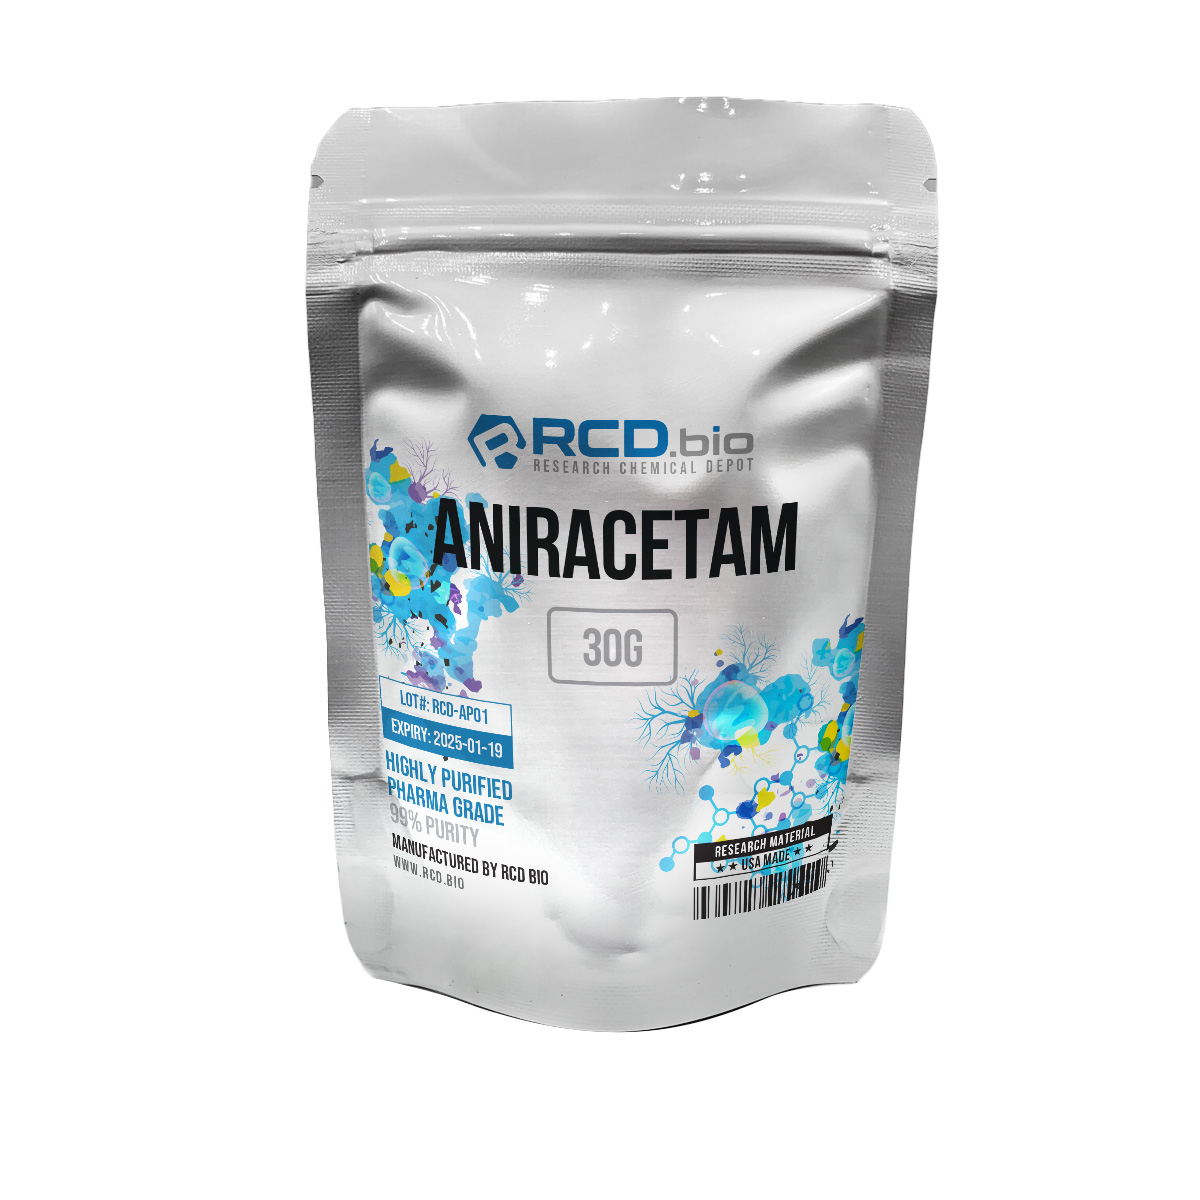 Aniracetam-30g-70x70_NU